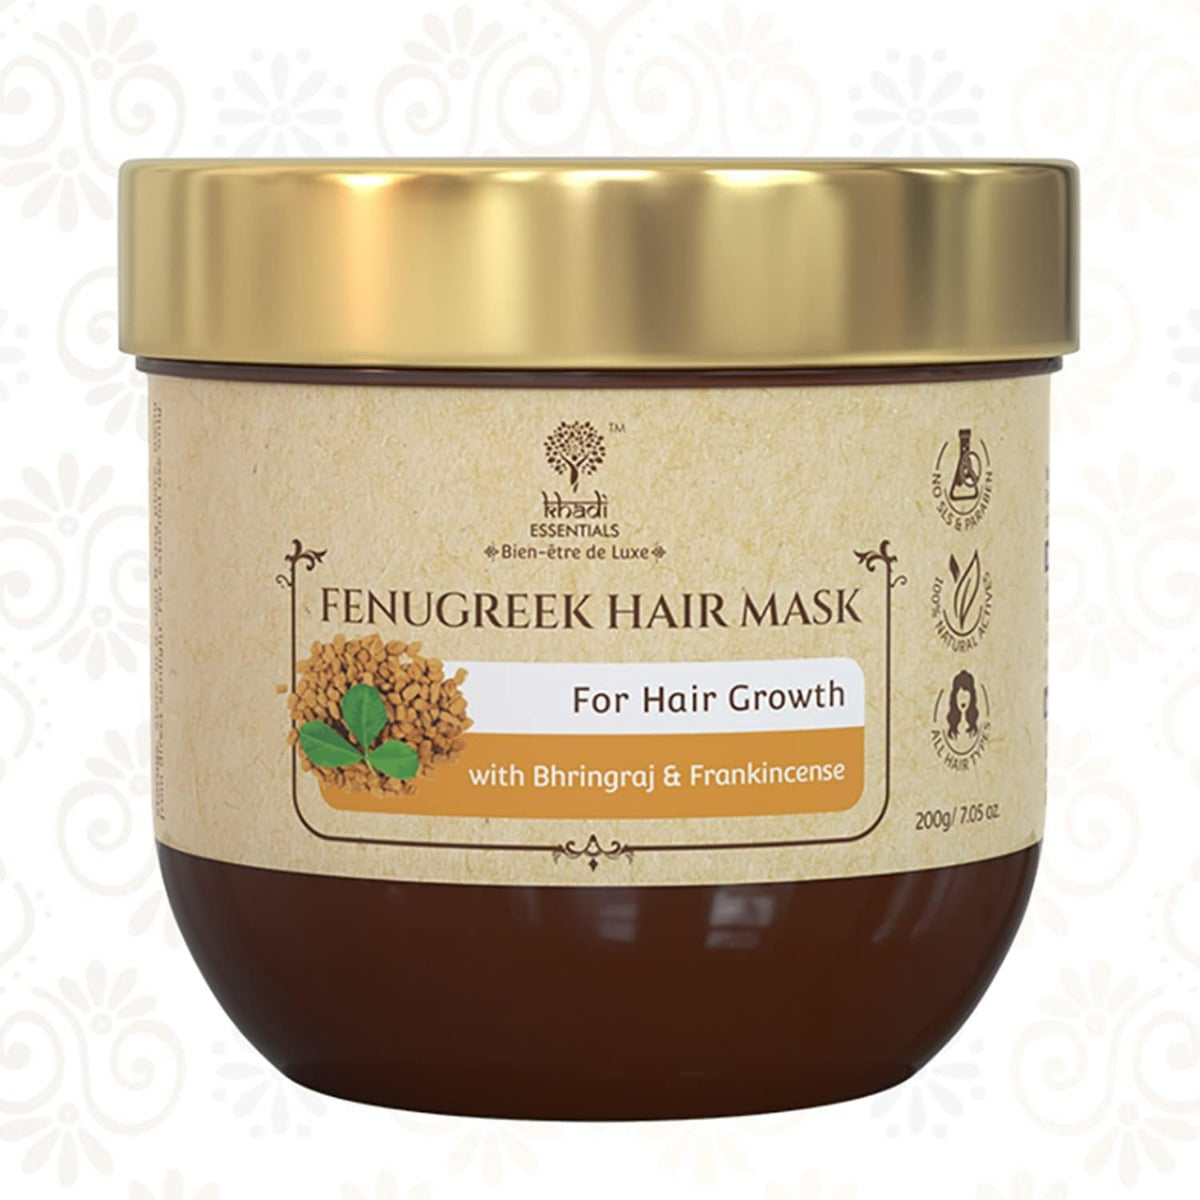 Khadi Essentials Fenugreek Hair Mask for Hair Growth (200gm)